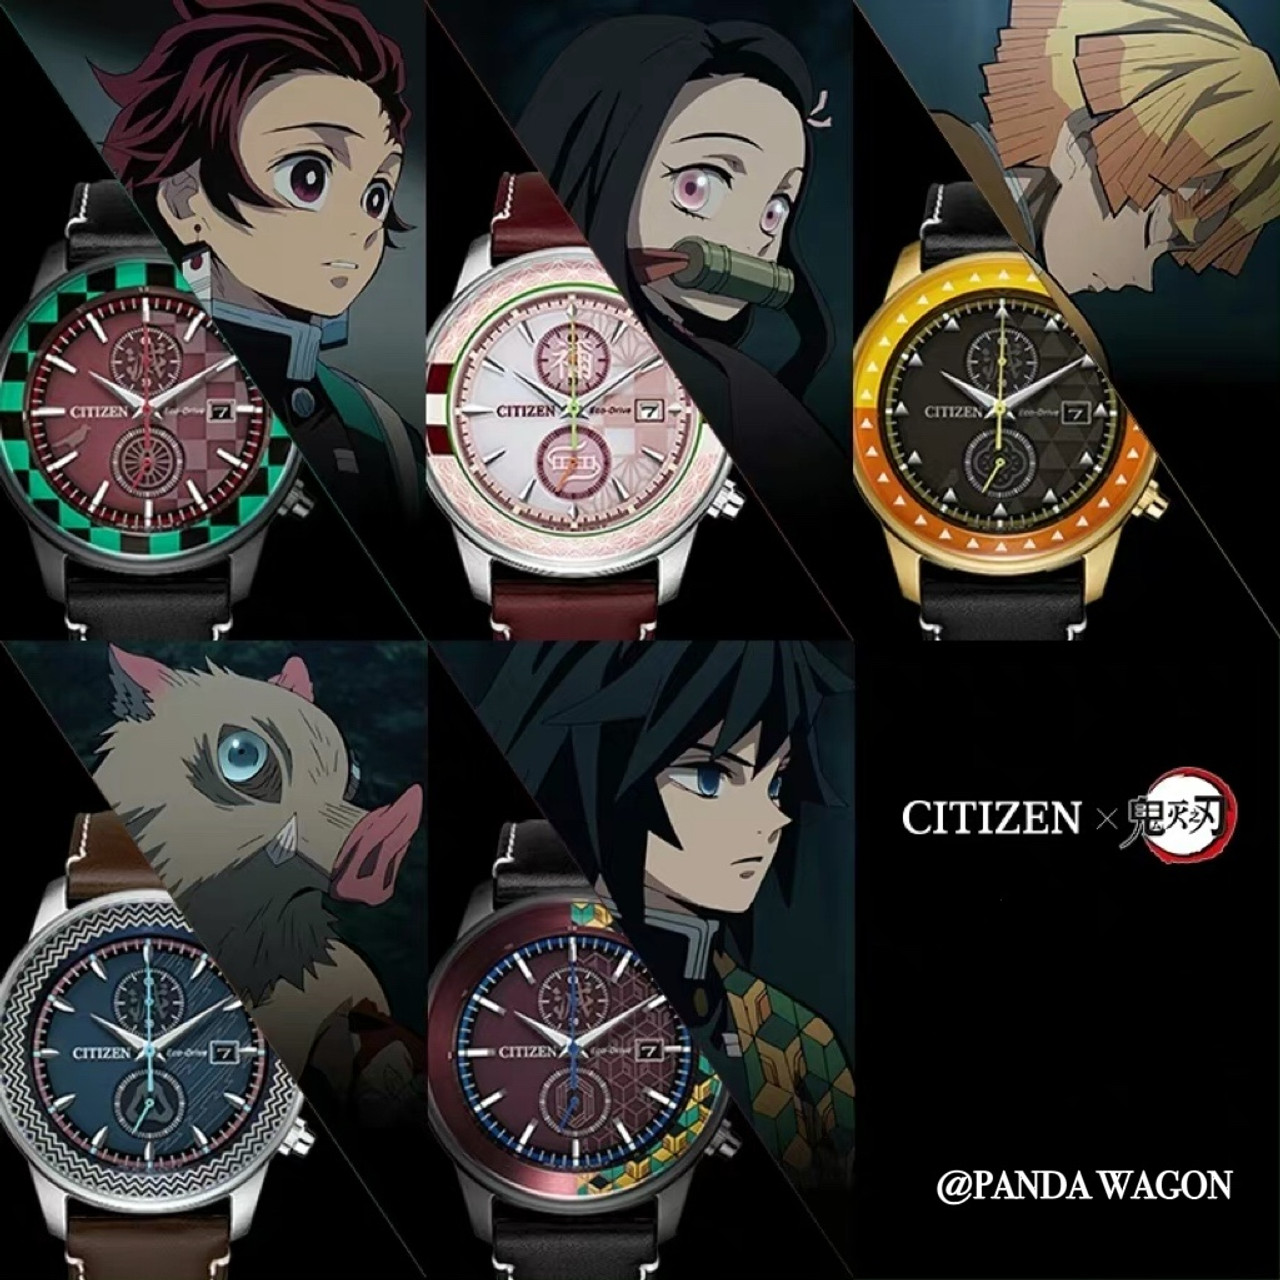 Citizen x Demon Slayer Limited Edition Wrist Watch